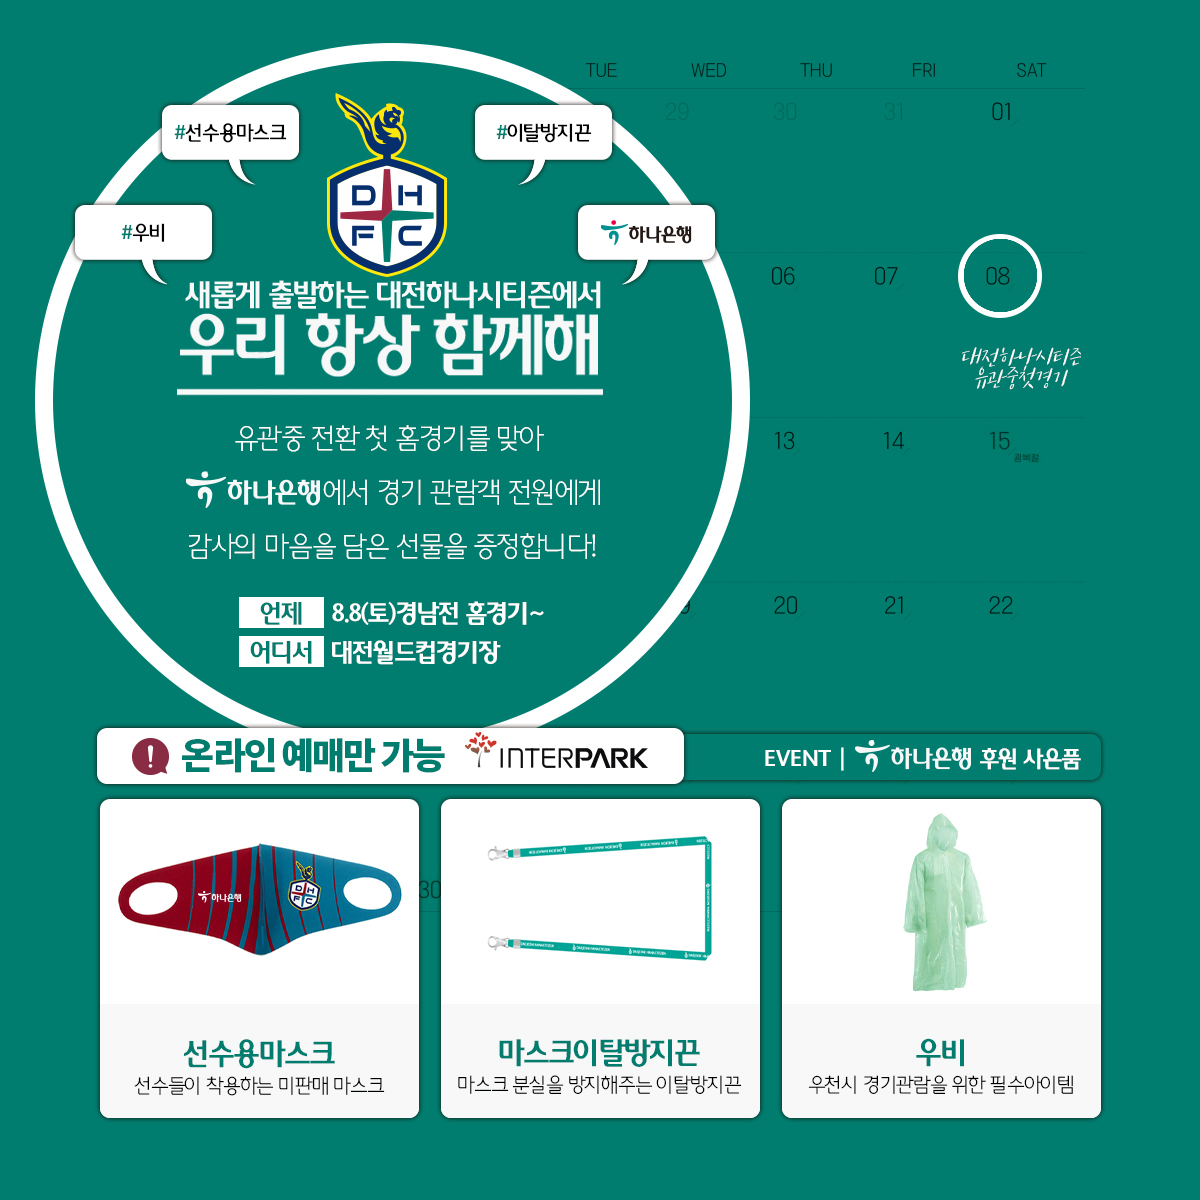 대전하나시티즌이 오는 8월 8일(토) 19시 대전월드컵경기장에서 열리는 경남FC와의 ‘하나원큐 K리그2 2020’ 14라운드 경기에서 팬들을 위한 다양한 사은품을 증정한다.